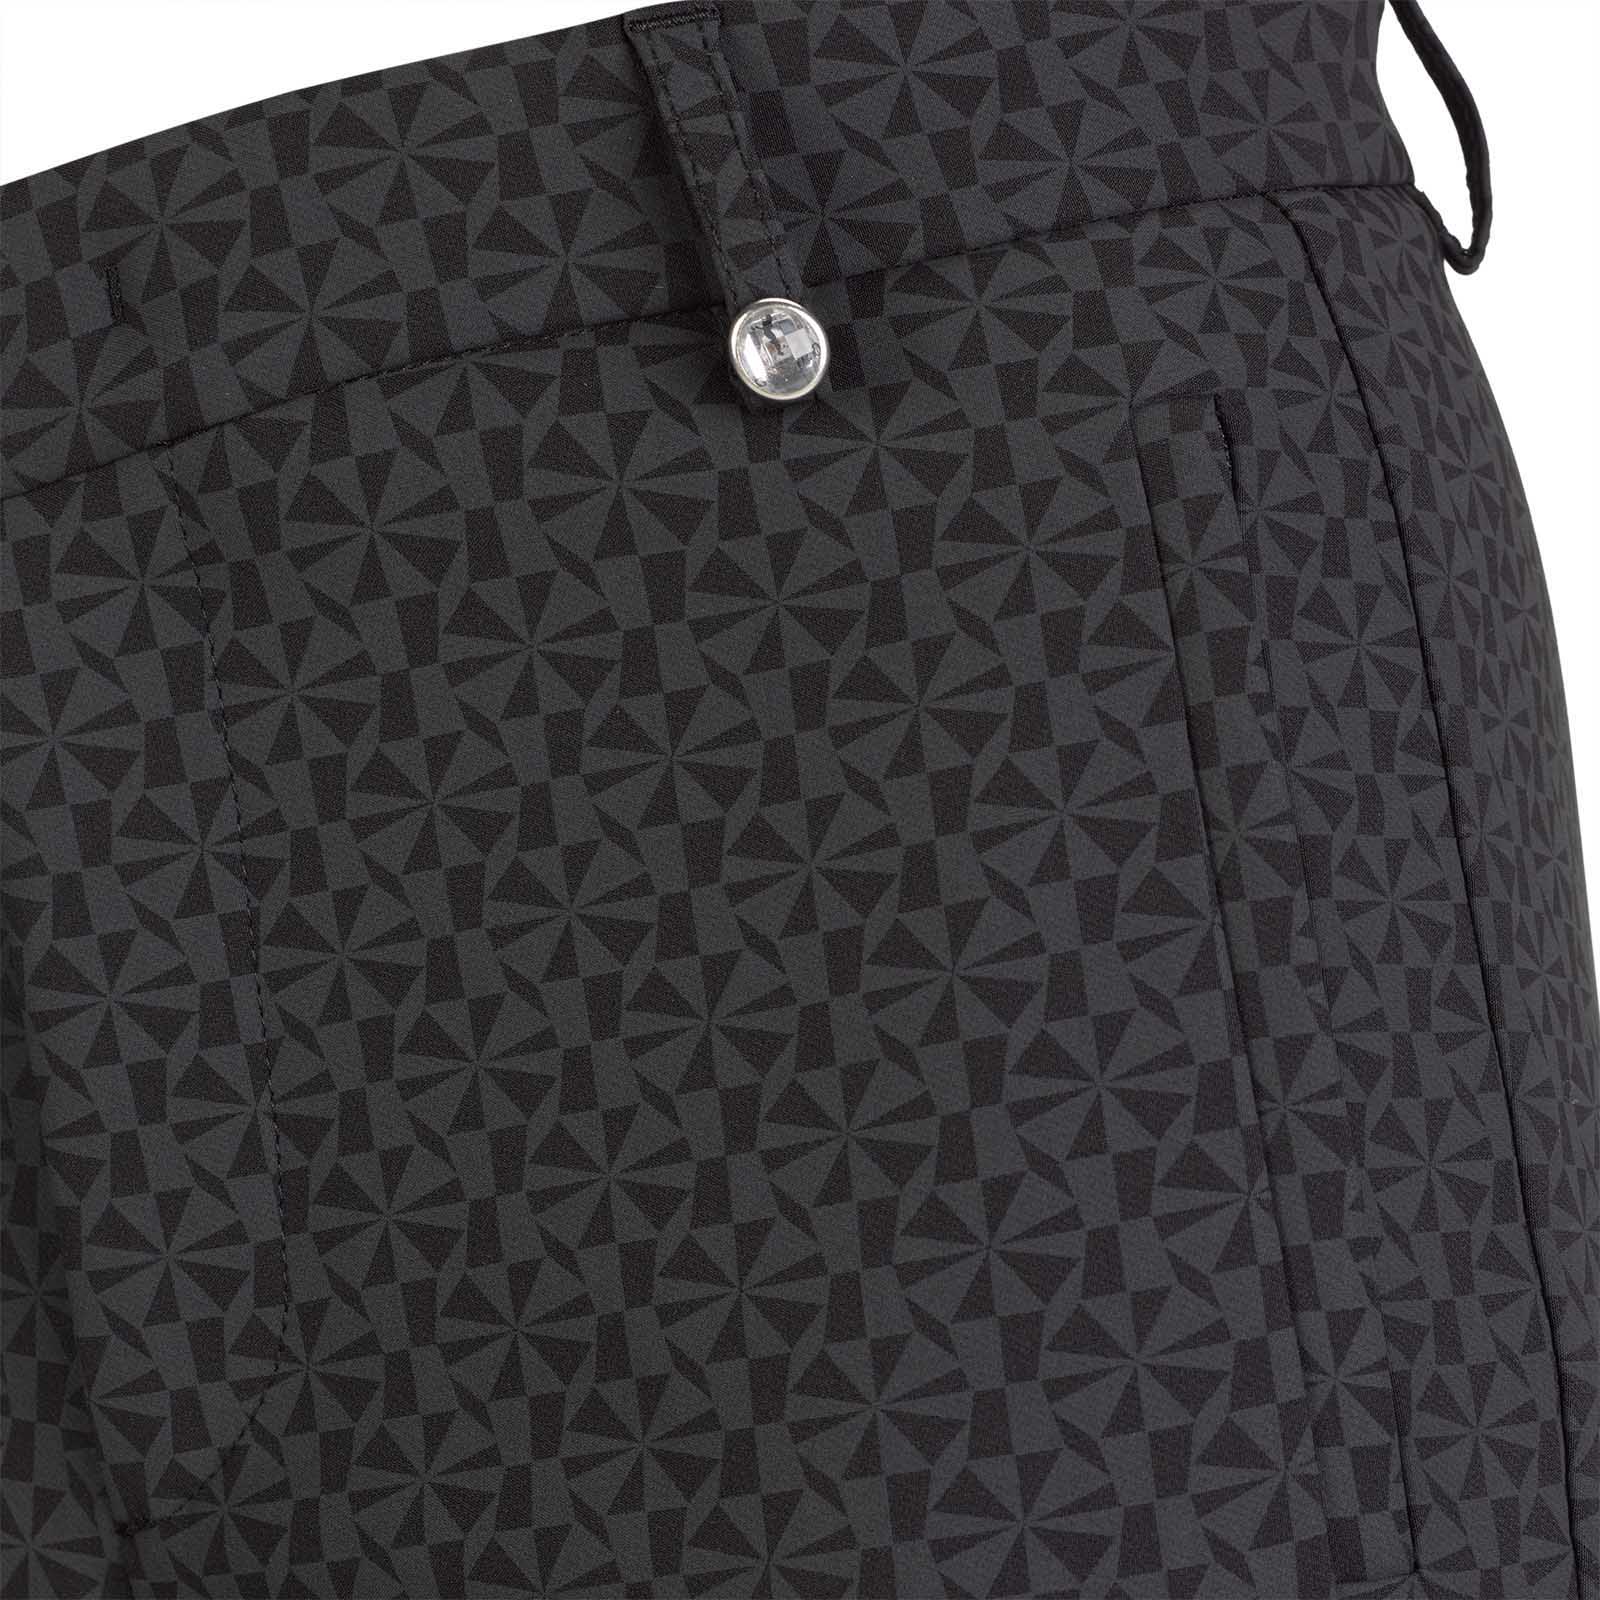 Damen 7/8 Print-Golfhose aus 4-Way-Stretch mit modischem Muster